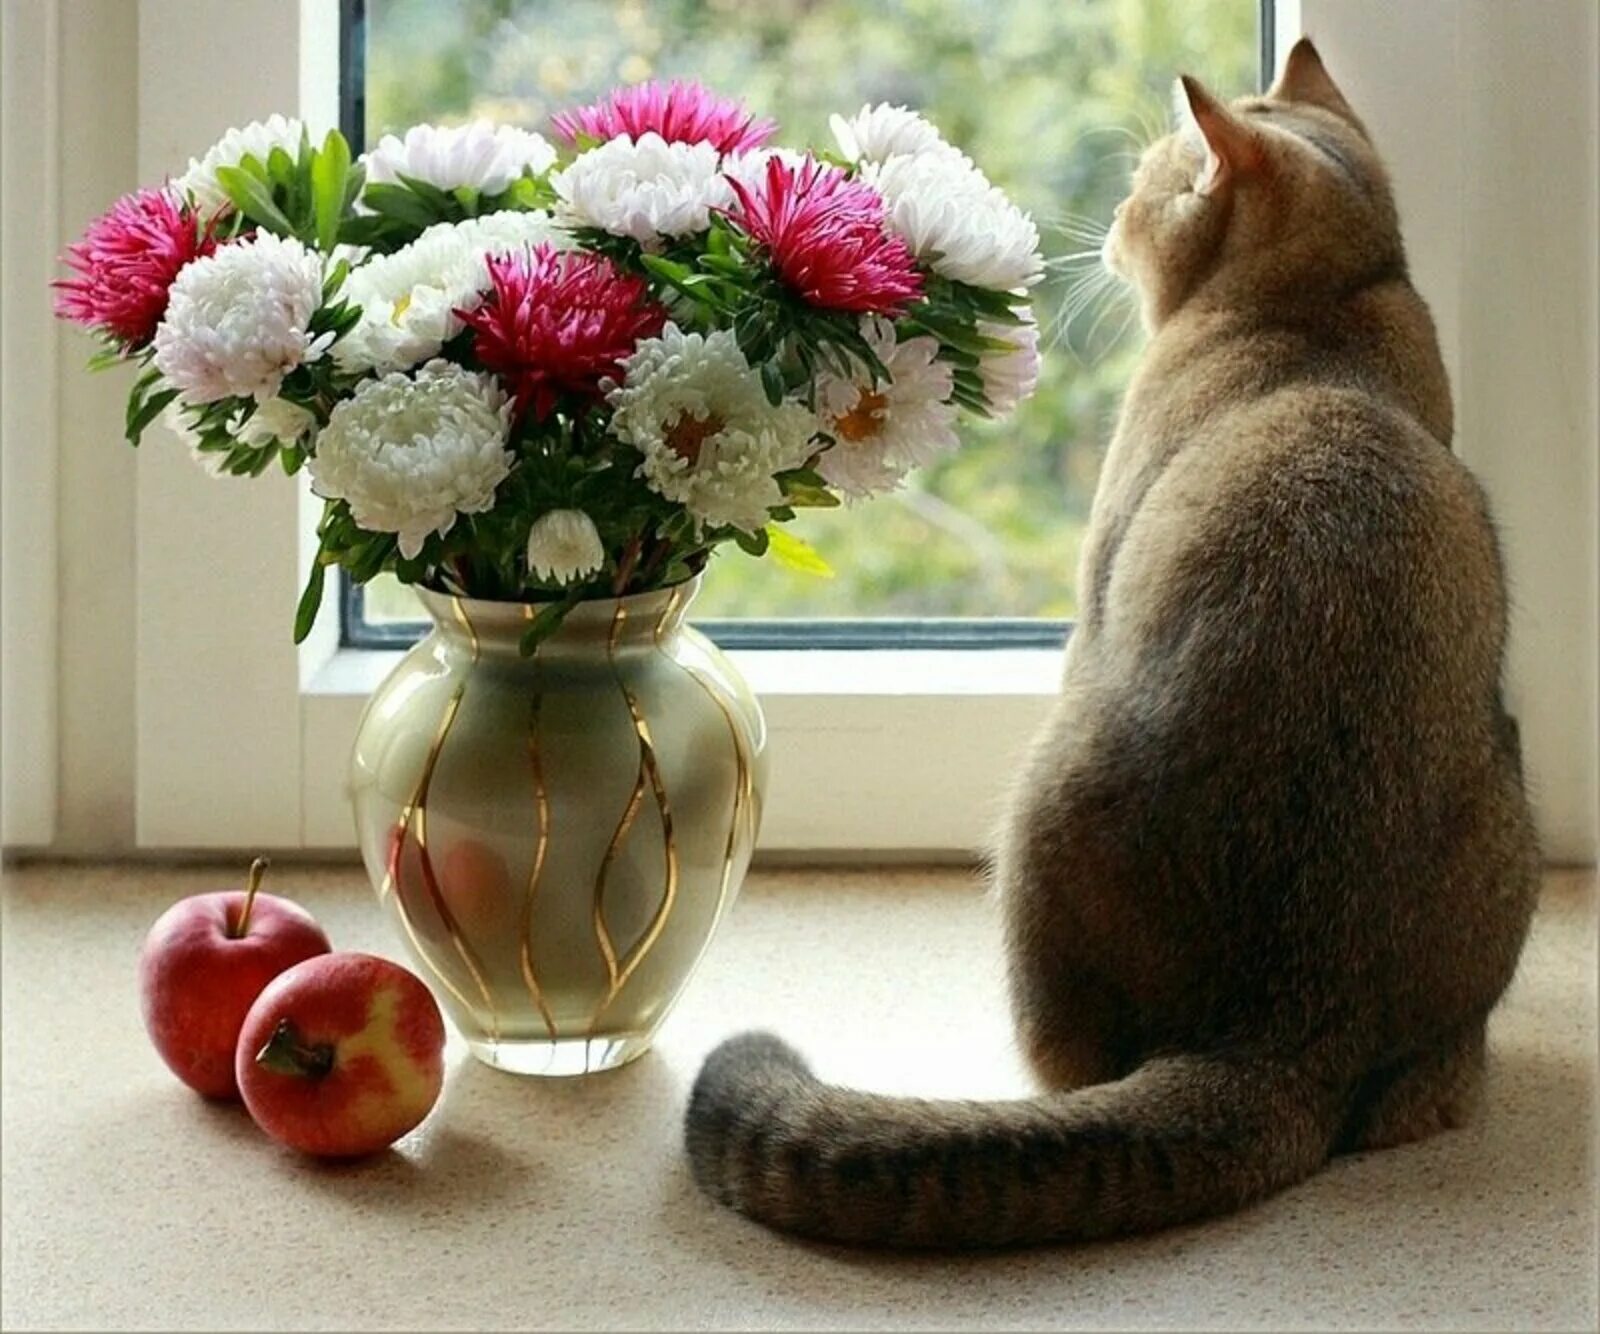 Доброго дня и прекрасного настроения цветы. Хорошего настроения и удачного дня цветы. Котик и цветы в вазе. Цветы для настроения. Кошка с цветами.